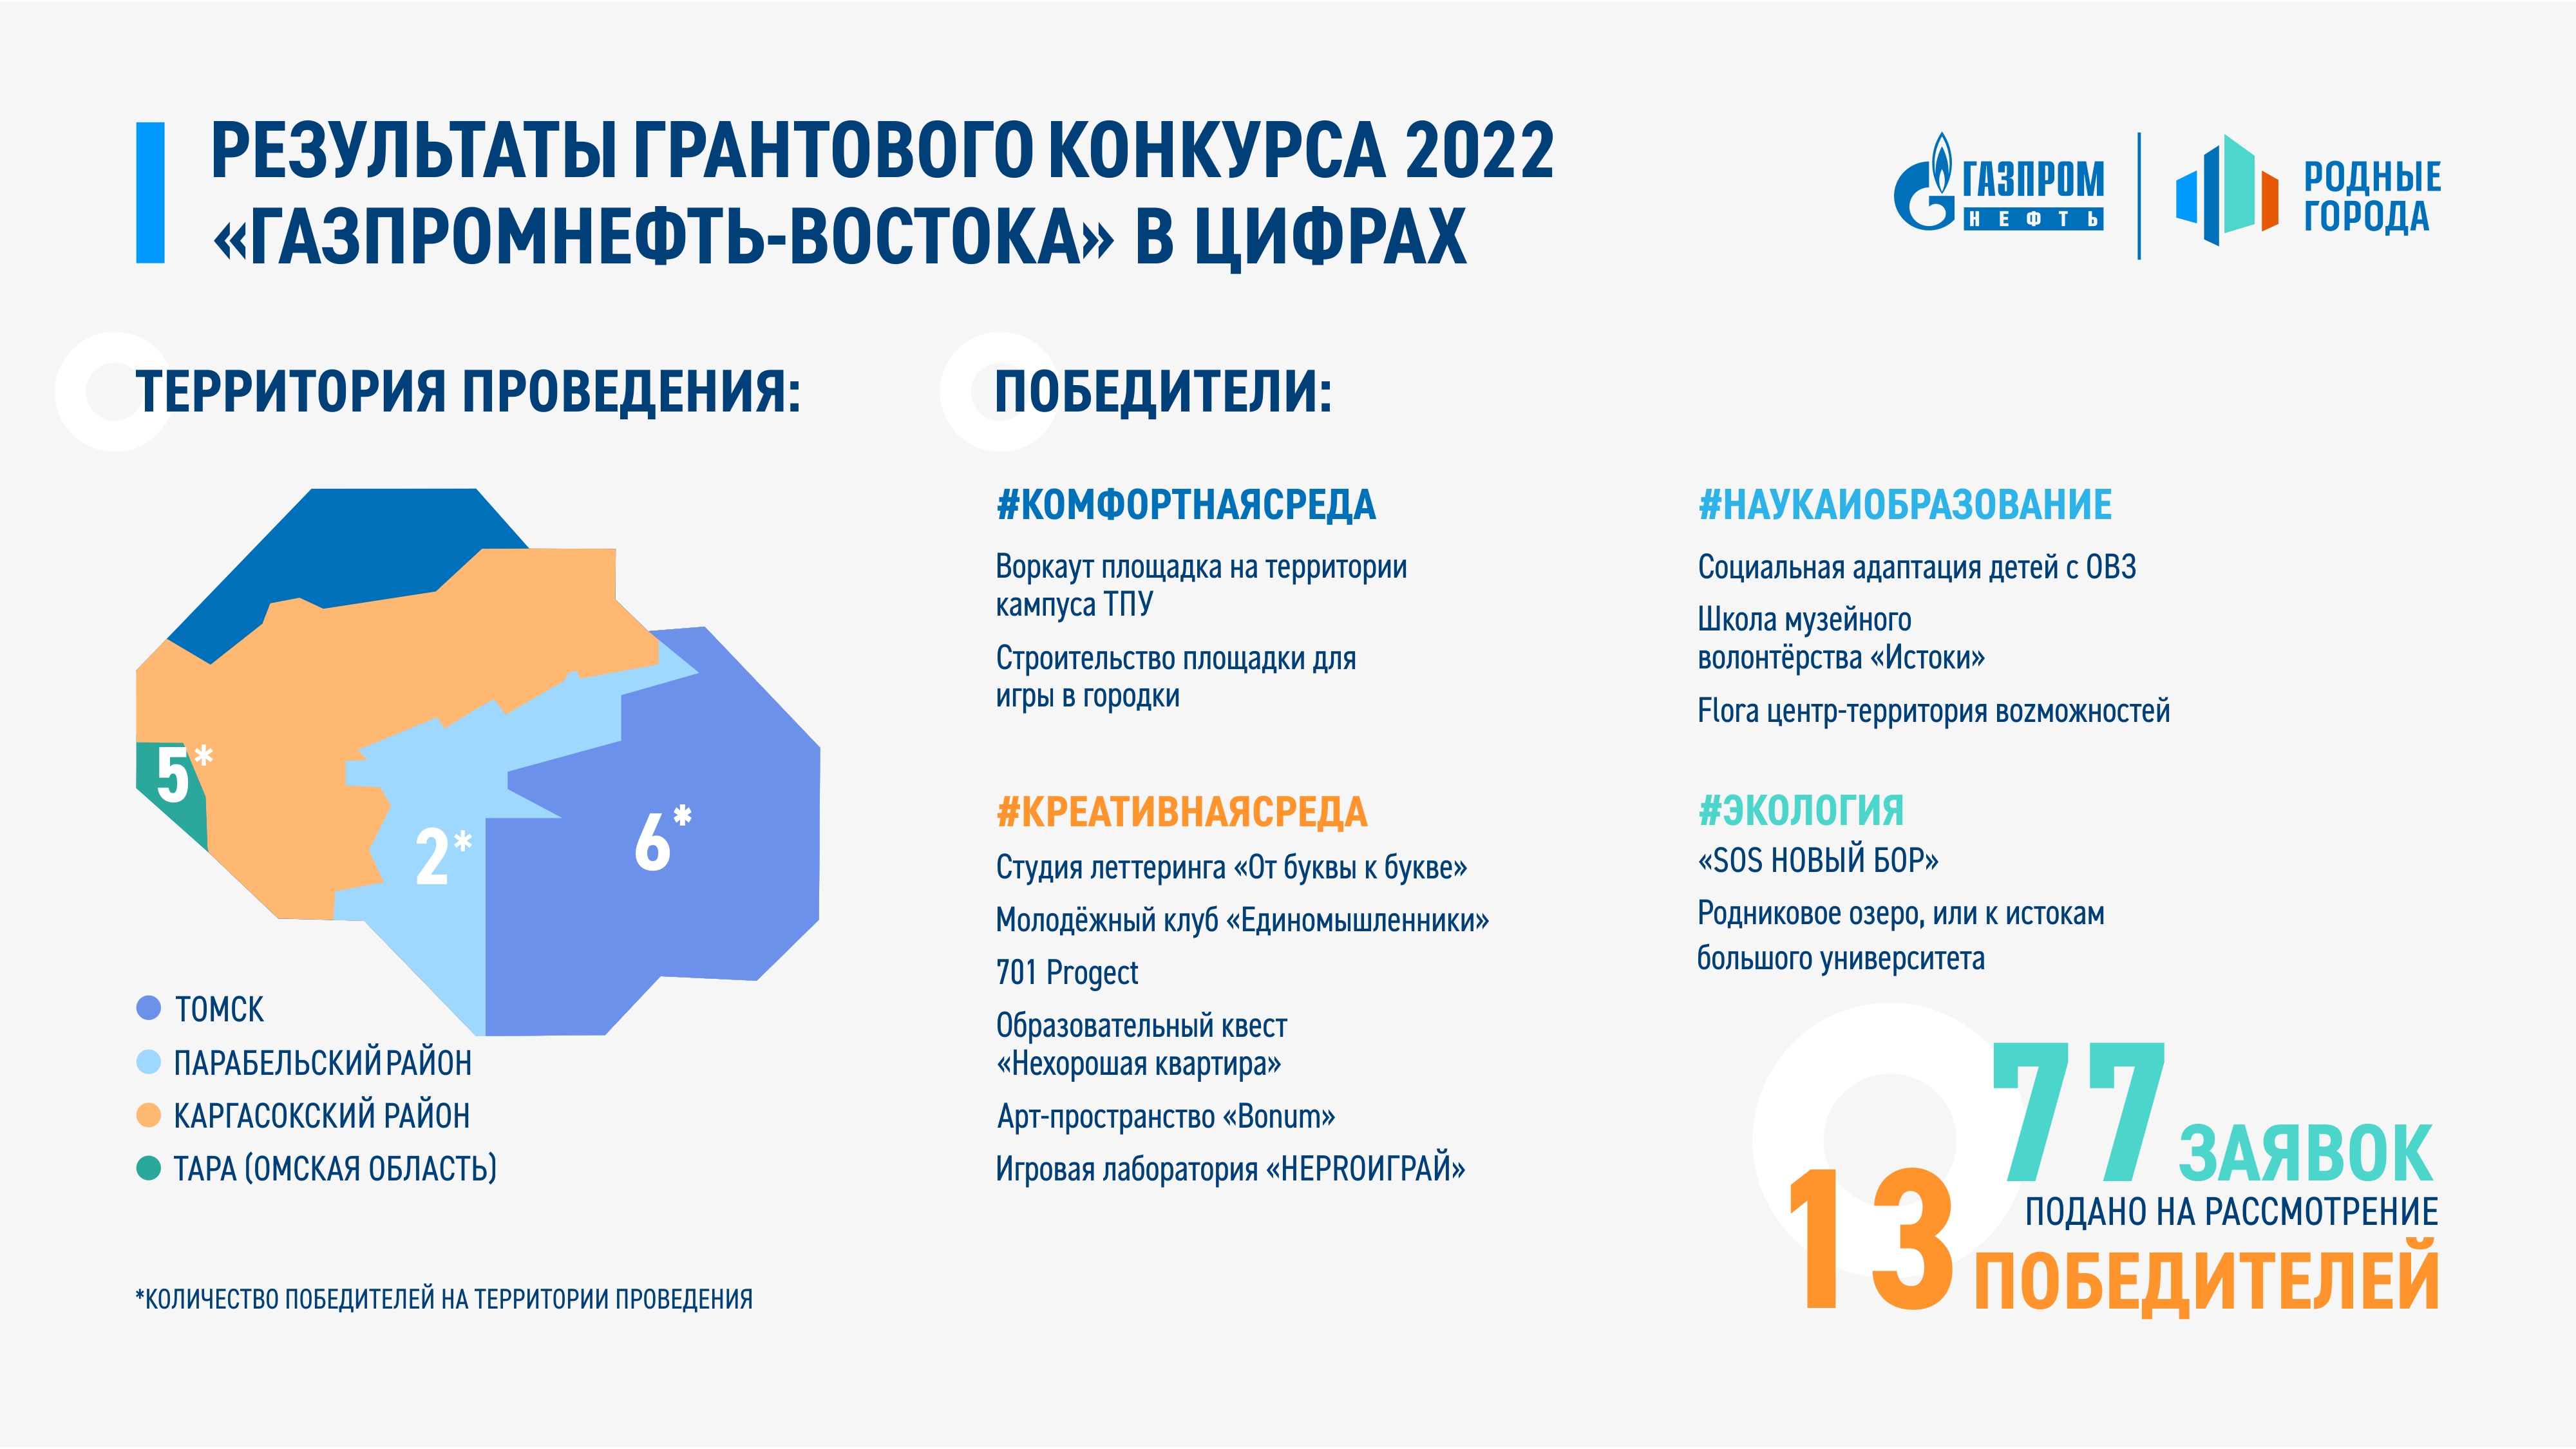 При поддержке «Газпромнефть-Востока» в Парабельском районе появился современный центр для молодежи.